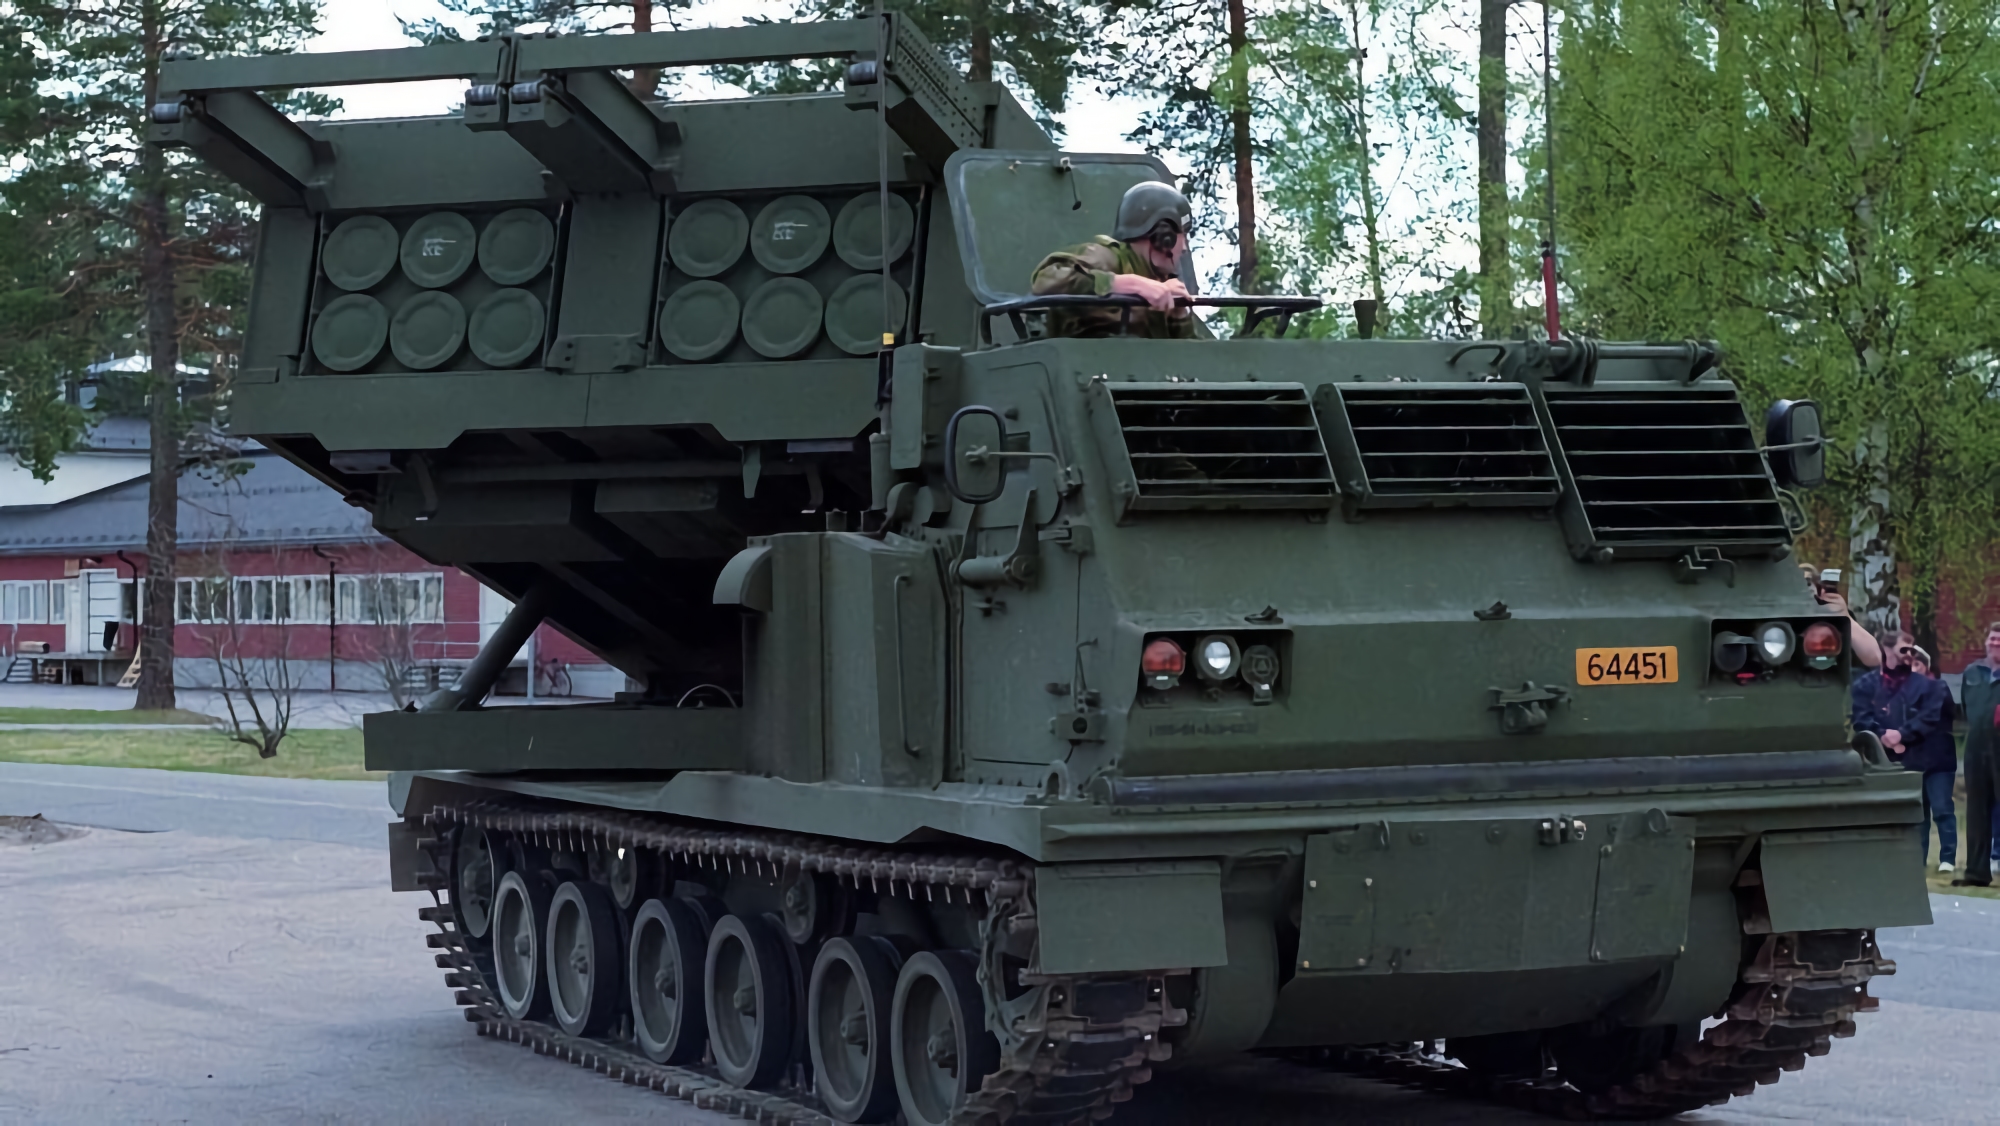 La Gran Bretagna darà all'Ucraina altri MLRS: si aspettano altri M270 sulla base cingolata del Bradley BMP.